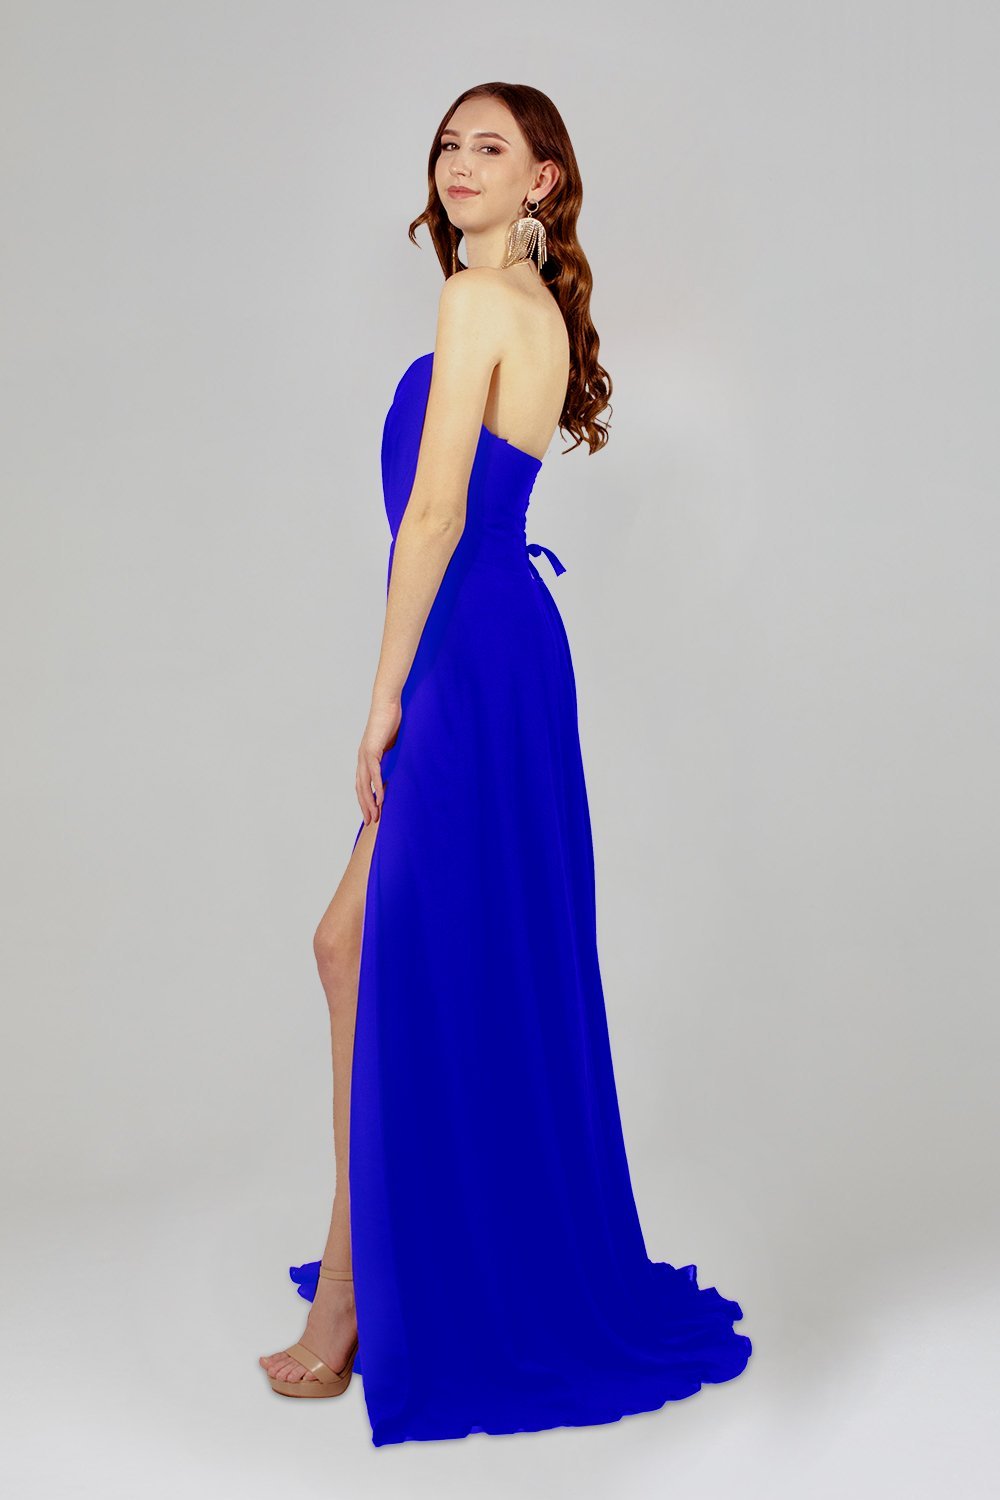 custom made royal blue chiffon bridesmaid dresses perth australia envious bridal & formal